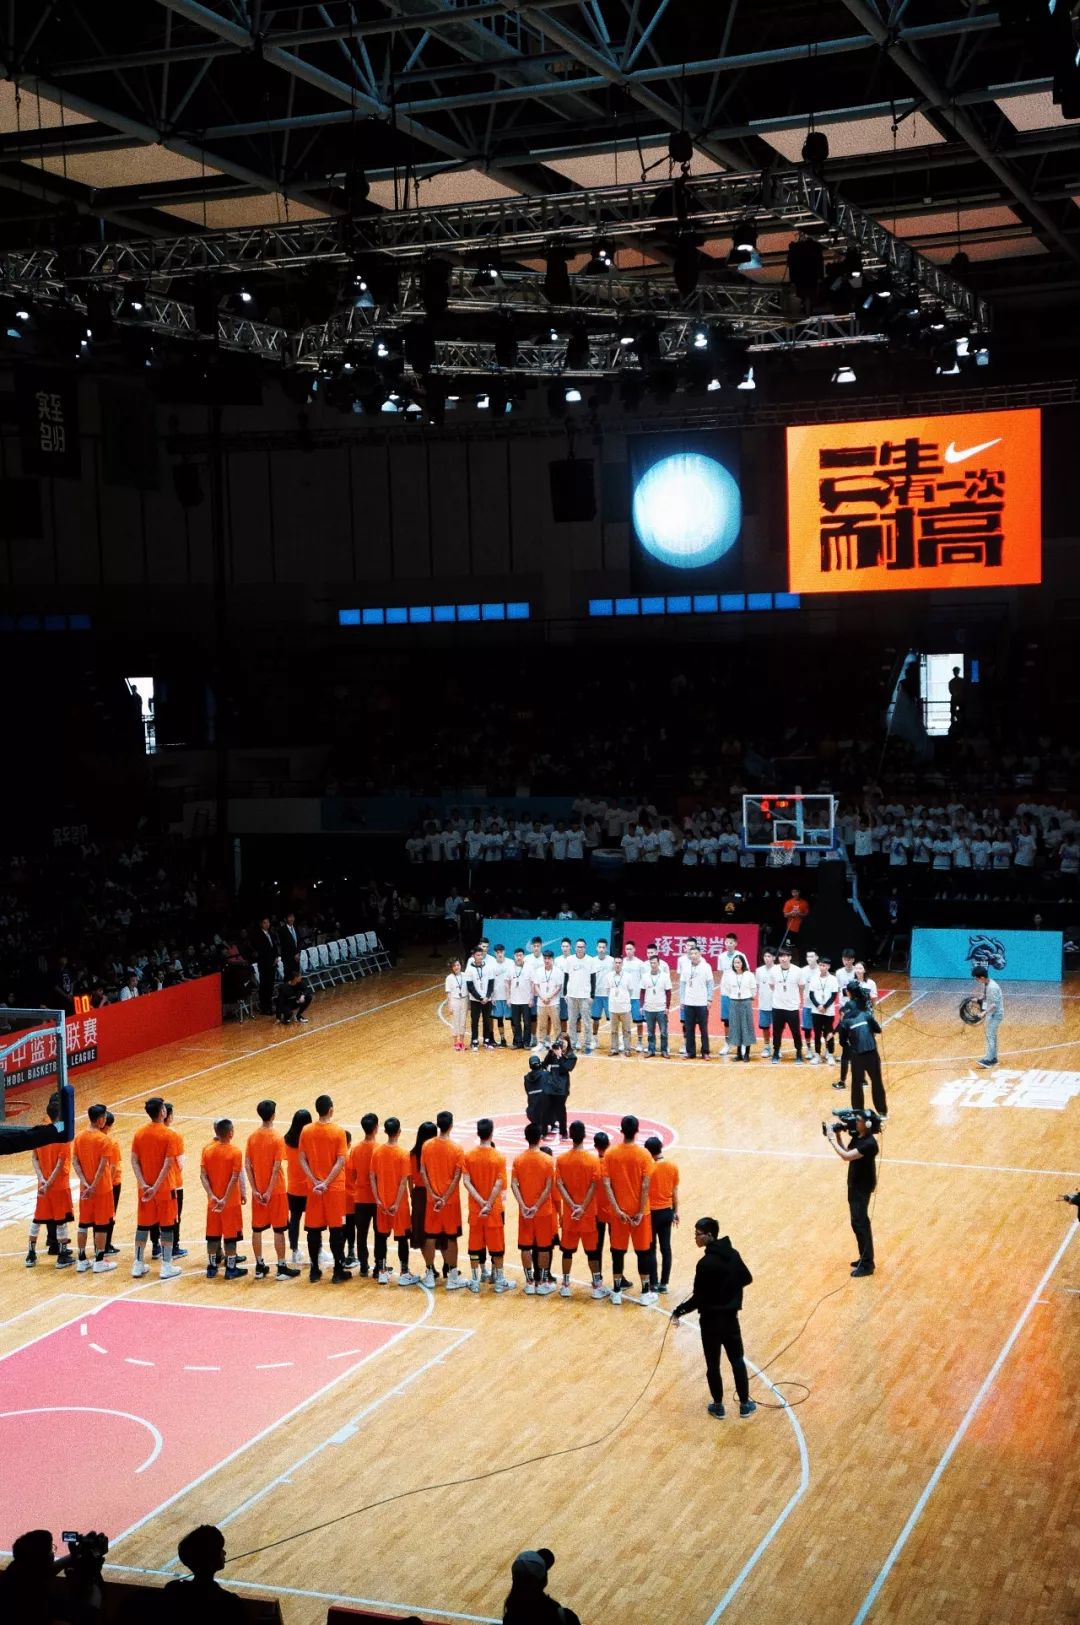 呐喊助威每一位都秩序井然的进入球场更是广州校园篮球文化的浓缩体现